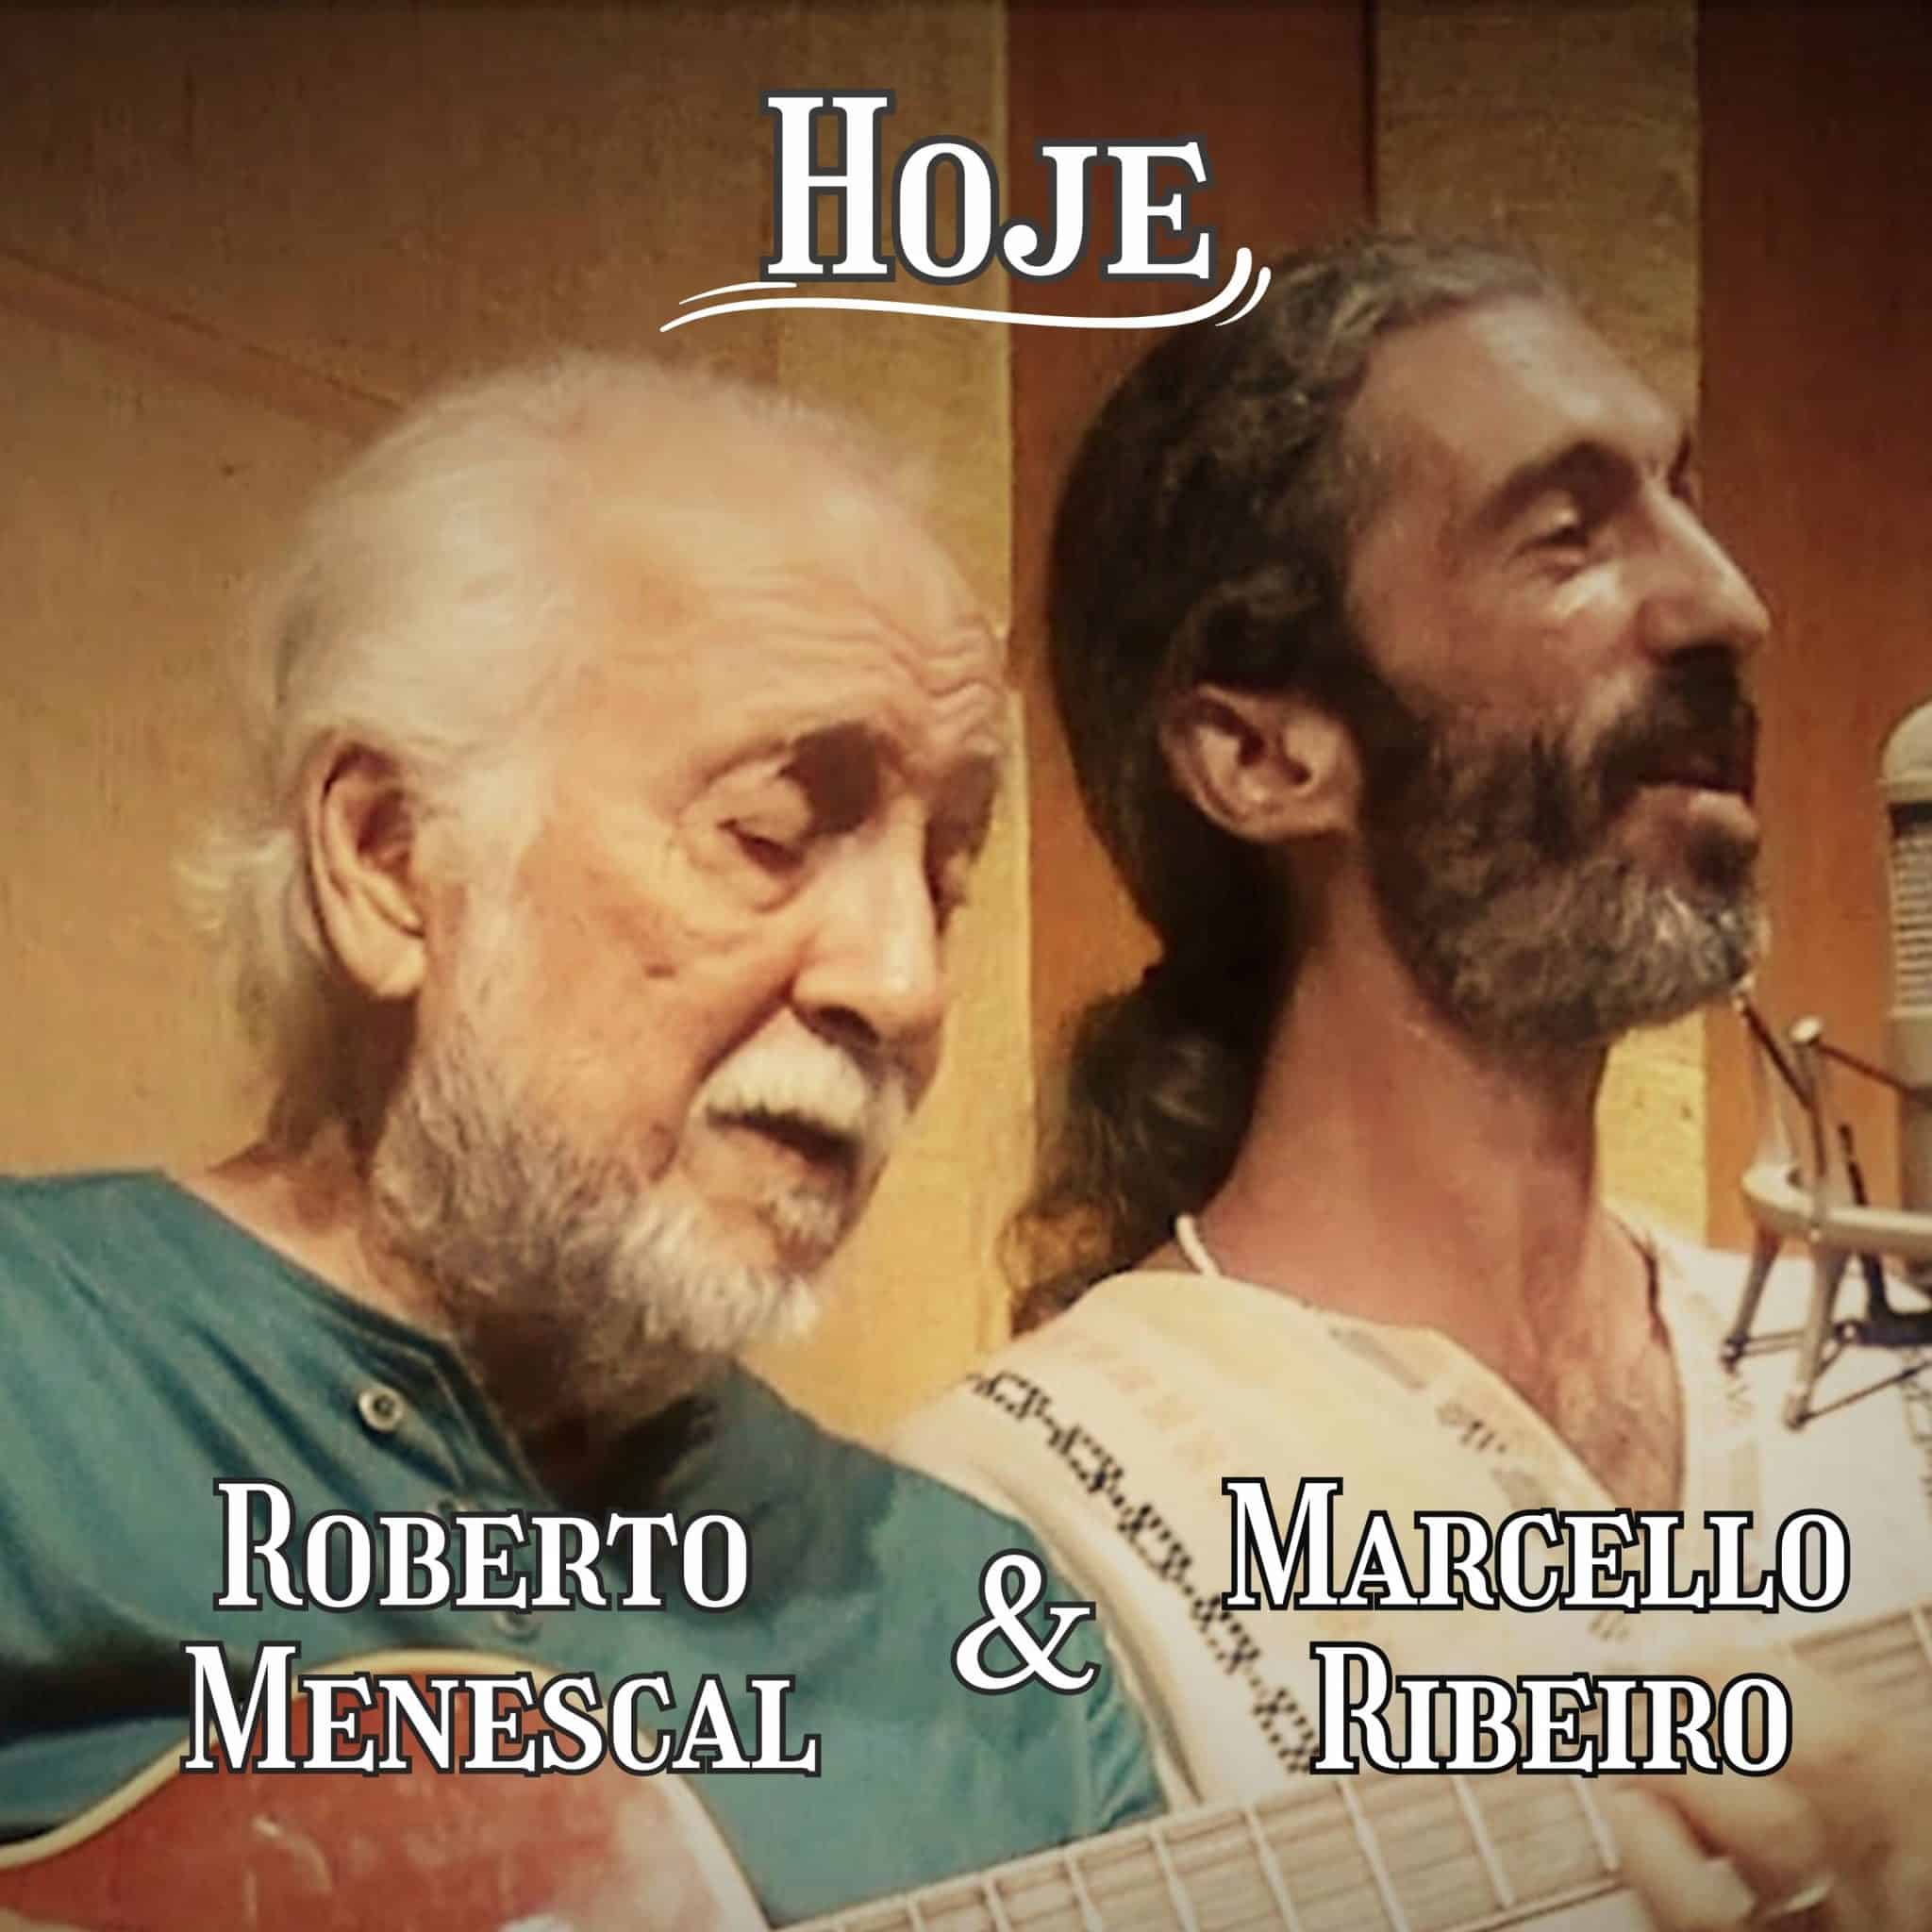 revistaprosaversoearte.com - Marcello Ribeiro lança single 'Hoje', com participação especial de Roberto Menescal